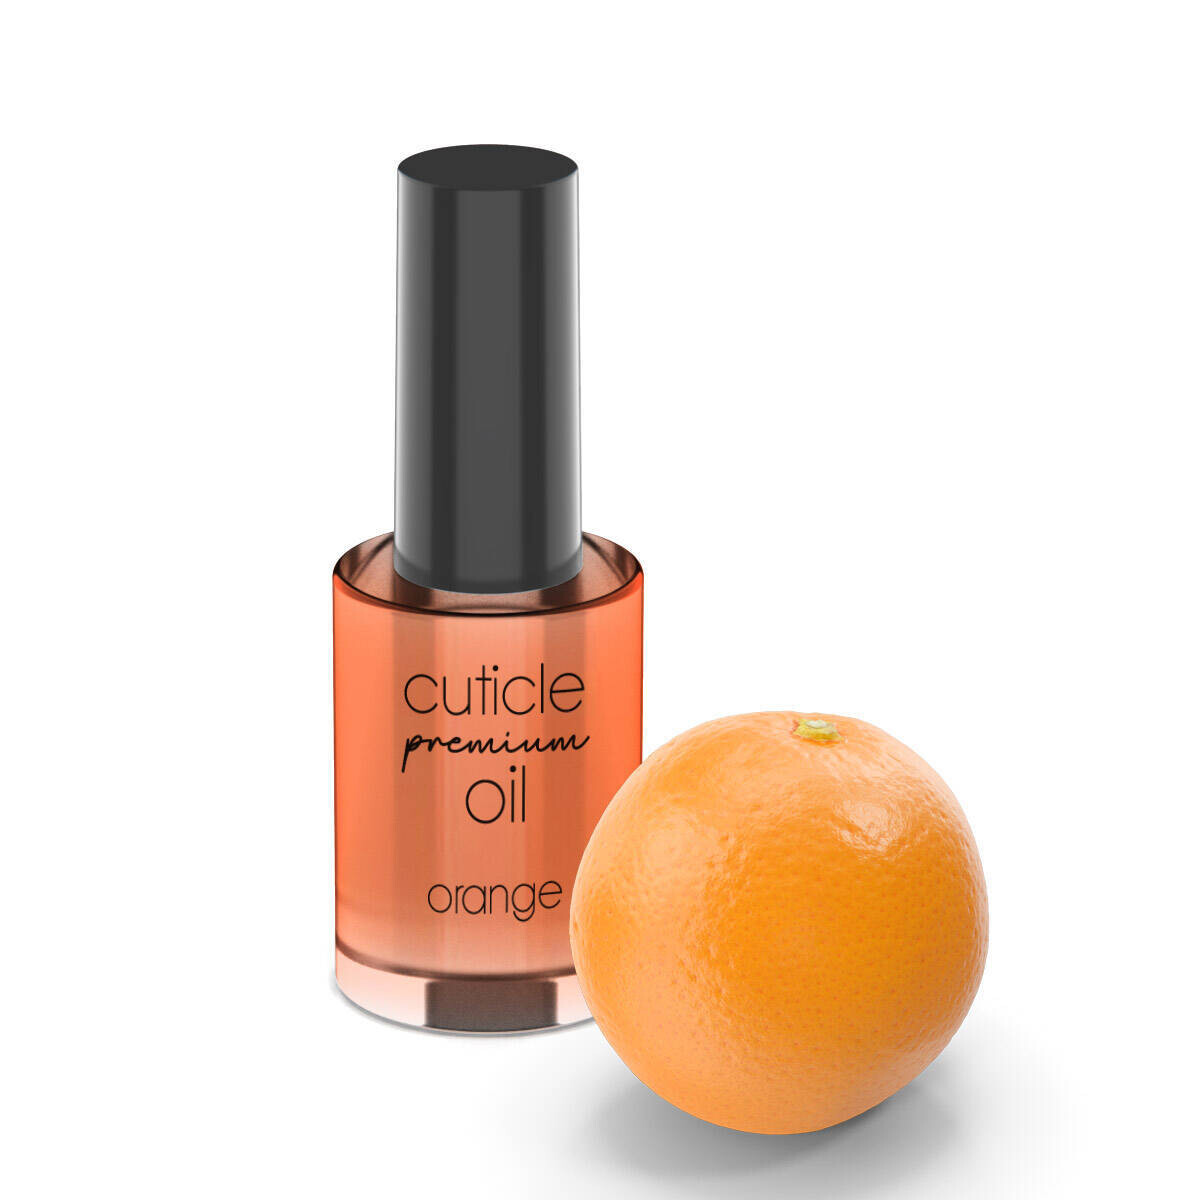 Cuticle oil premium orange 11ml